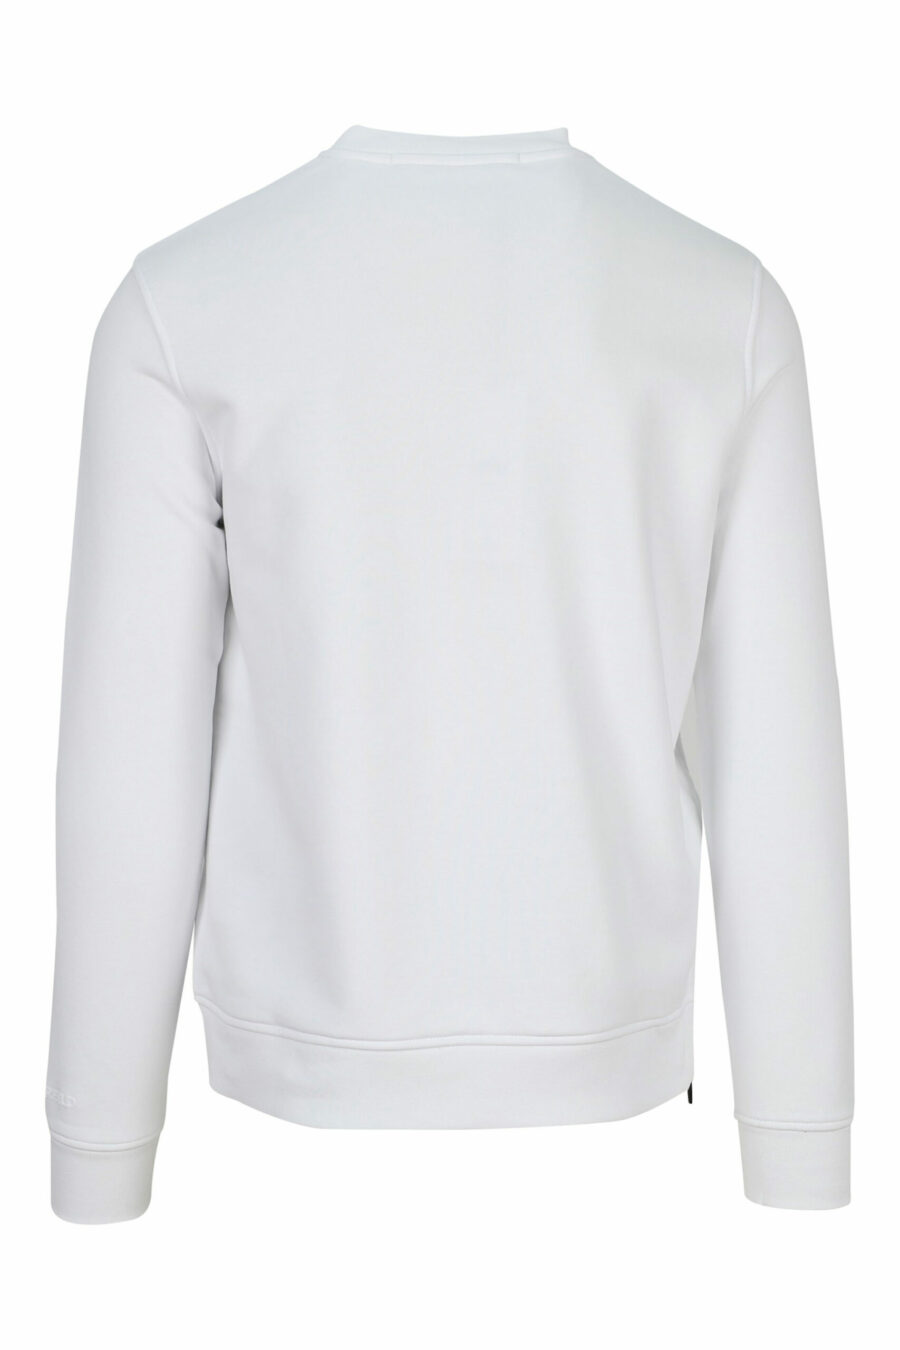 Weißes Sweatshirt mit mehrfarbigem "karl silhouette" Maxilogo - 4062226392853 2 skaliert